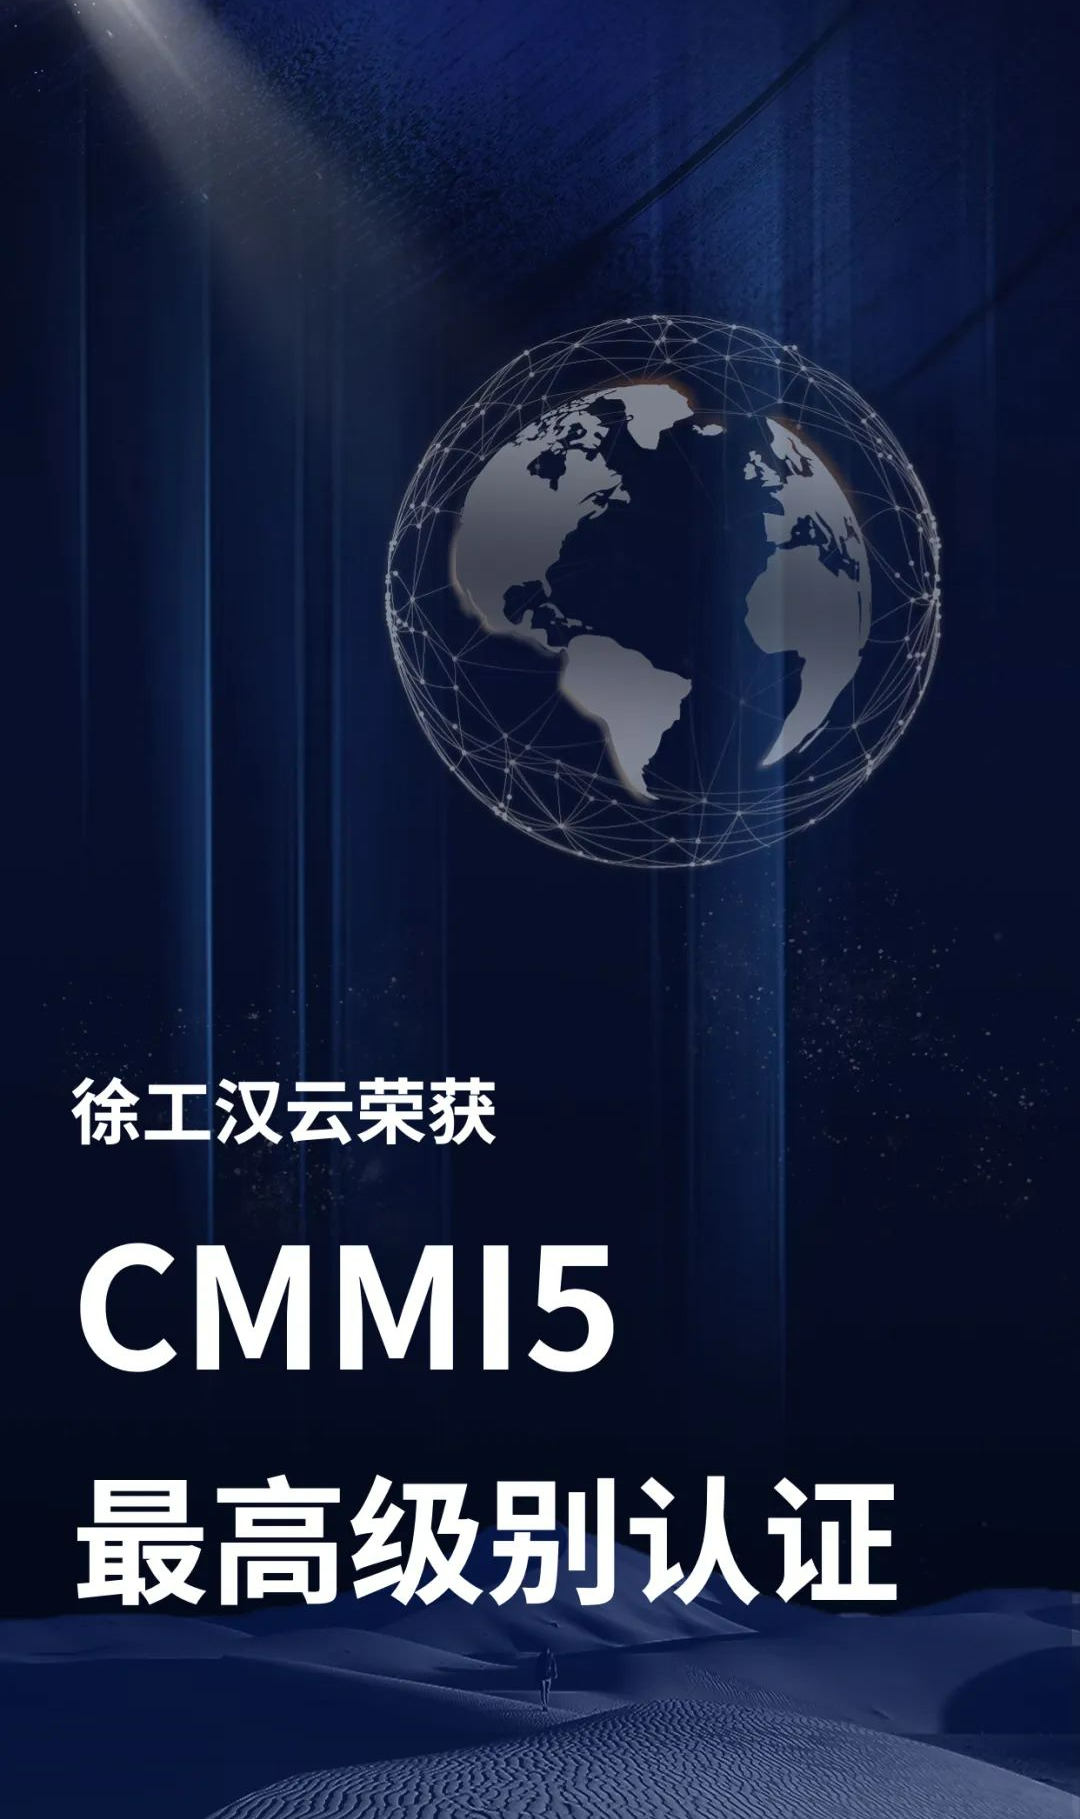 徐工汉云荣获CMMI5级认证